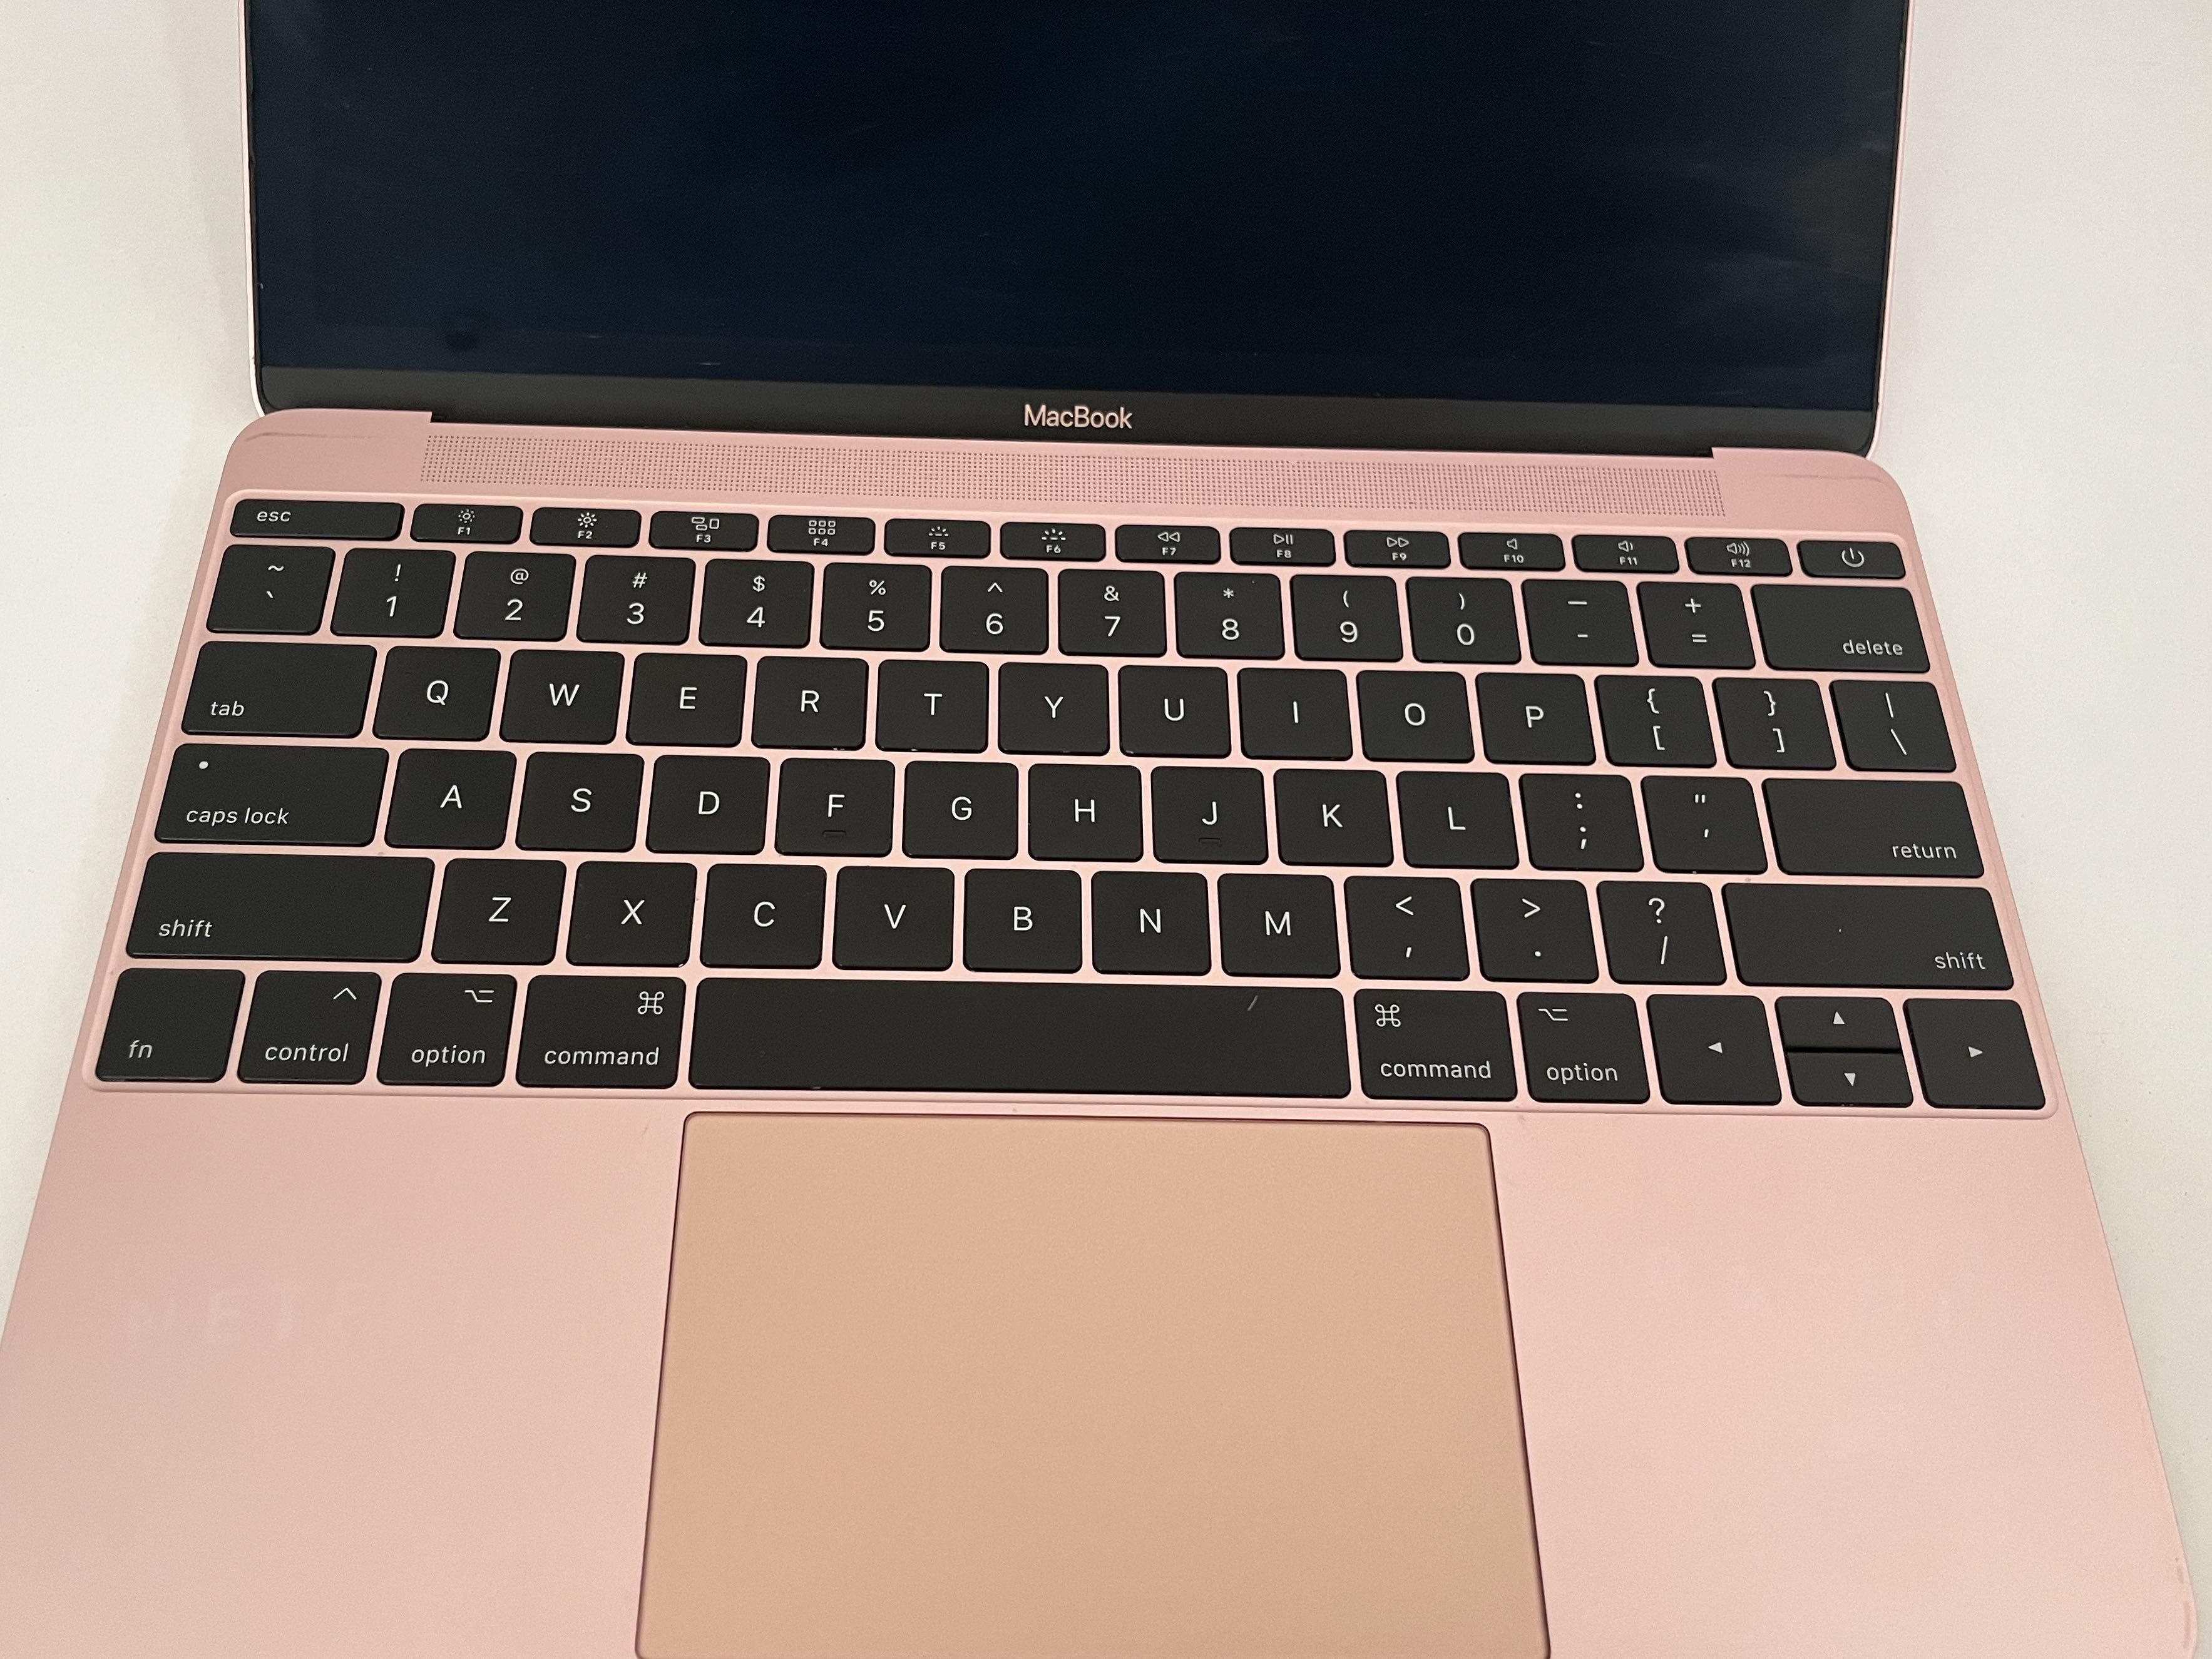 12-inch MacBook 1.2GHz dual-core Intel Core m3 - Rose Gold